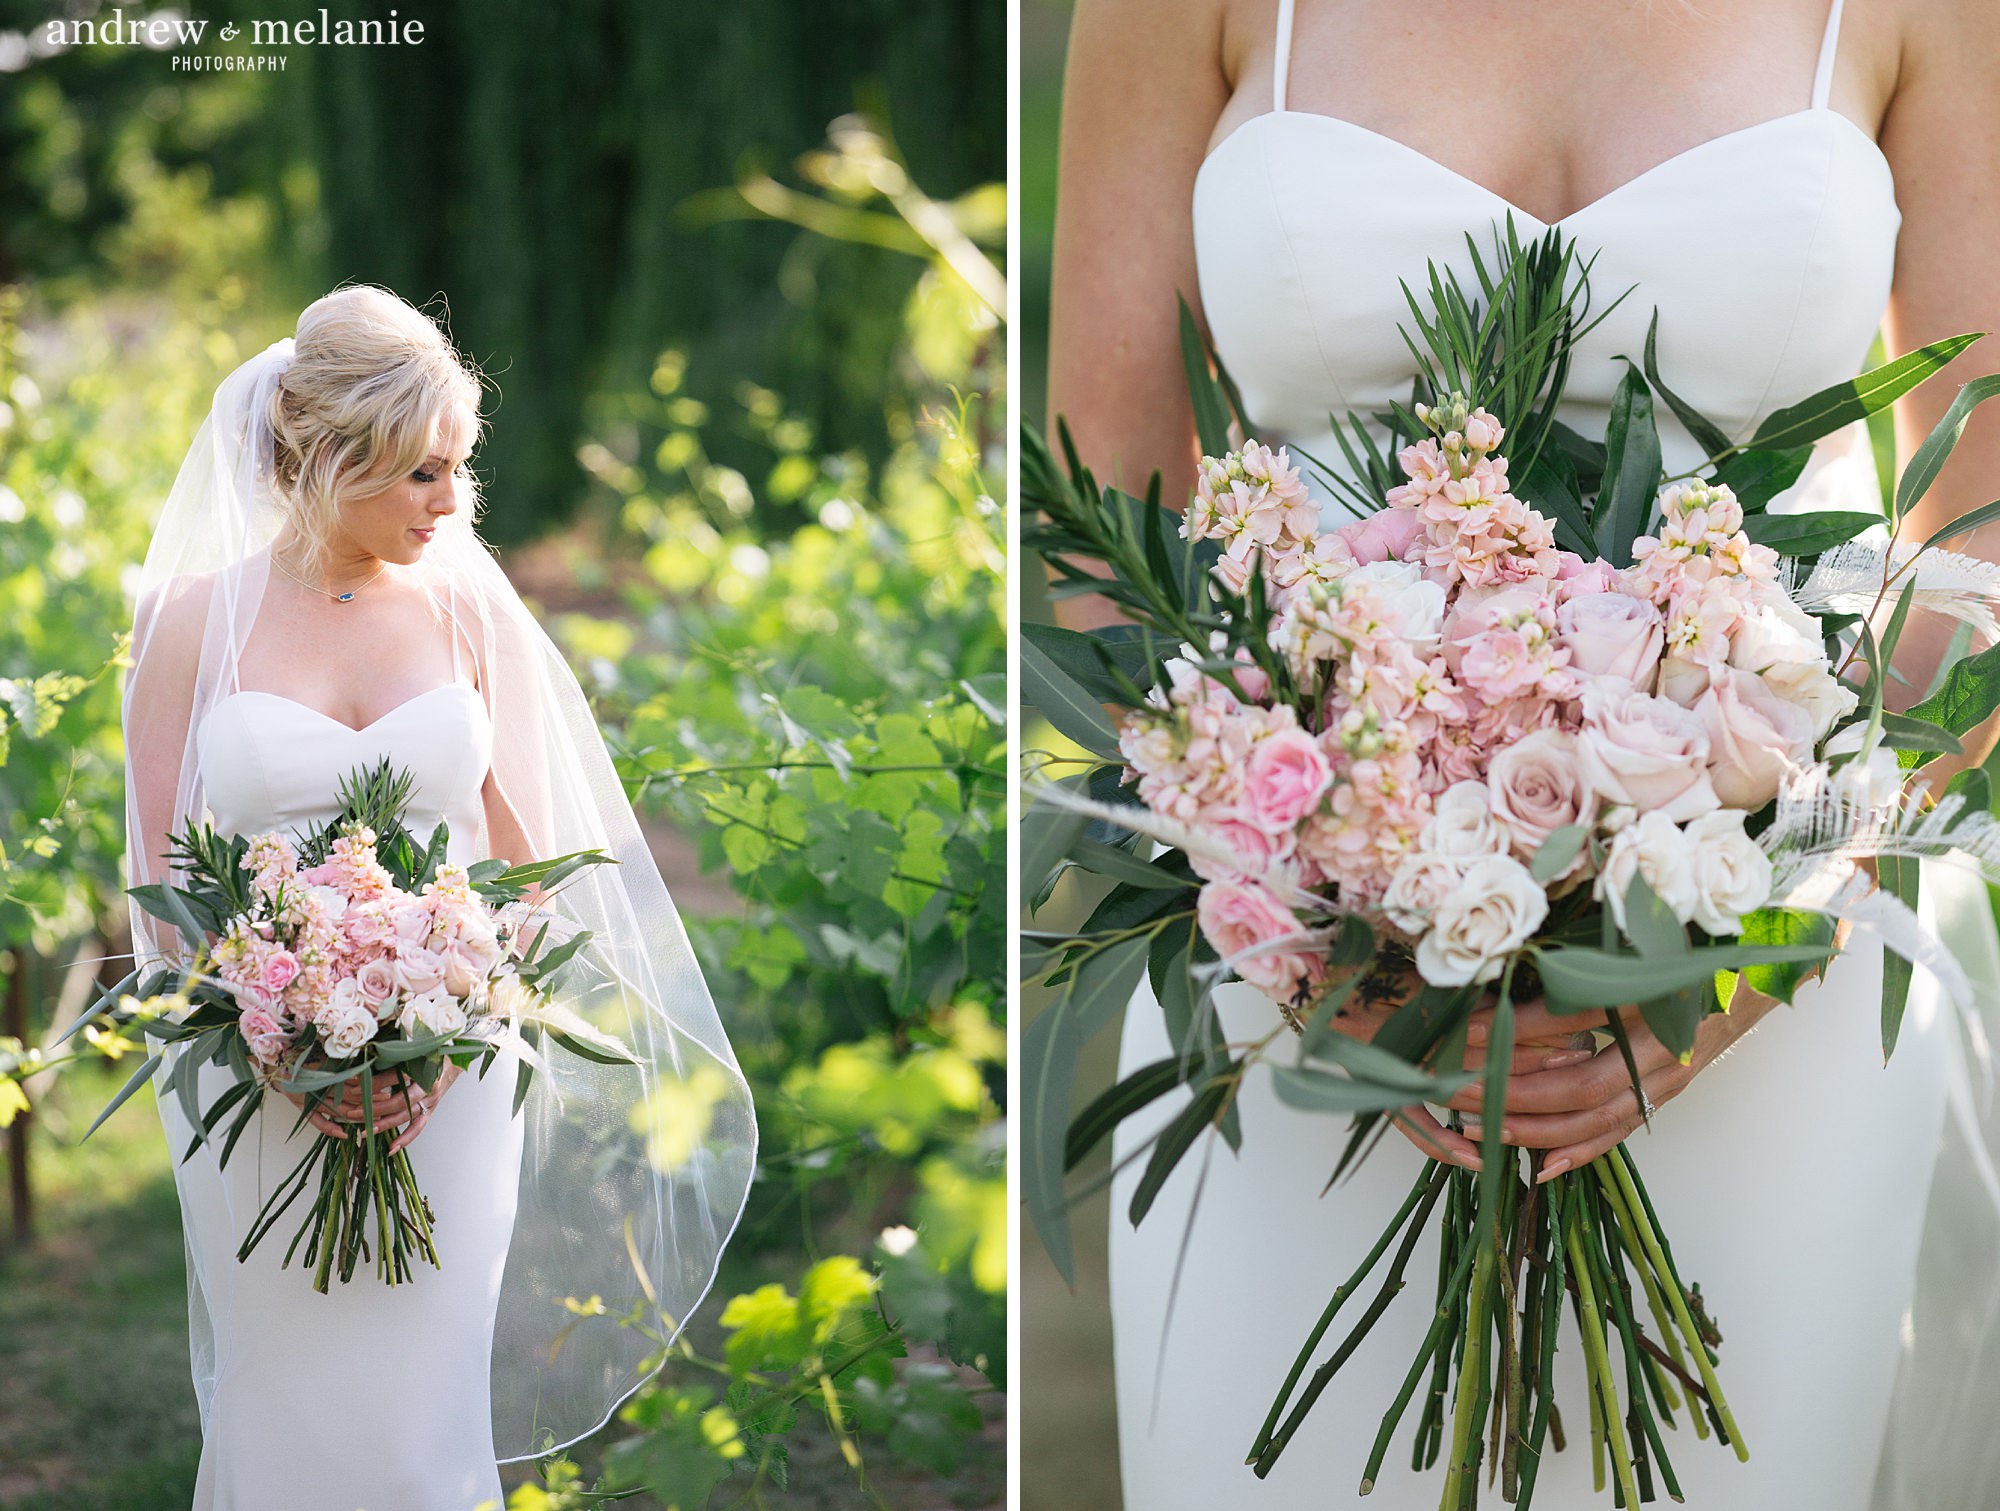 Wolfe Heights Event Center in Sacramento, CA. Spring wedding photos in garden with blush pink wedding bouquet